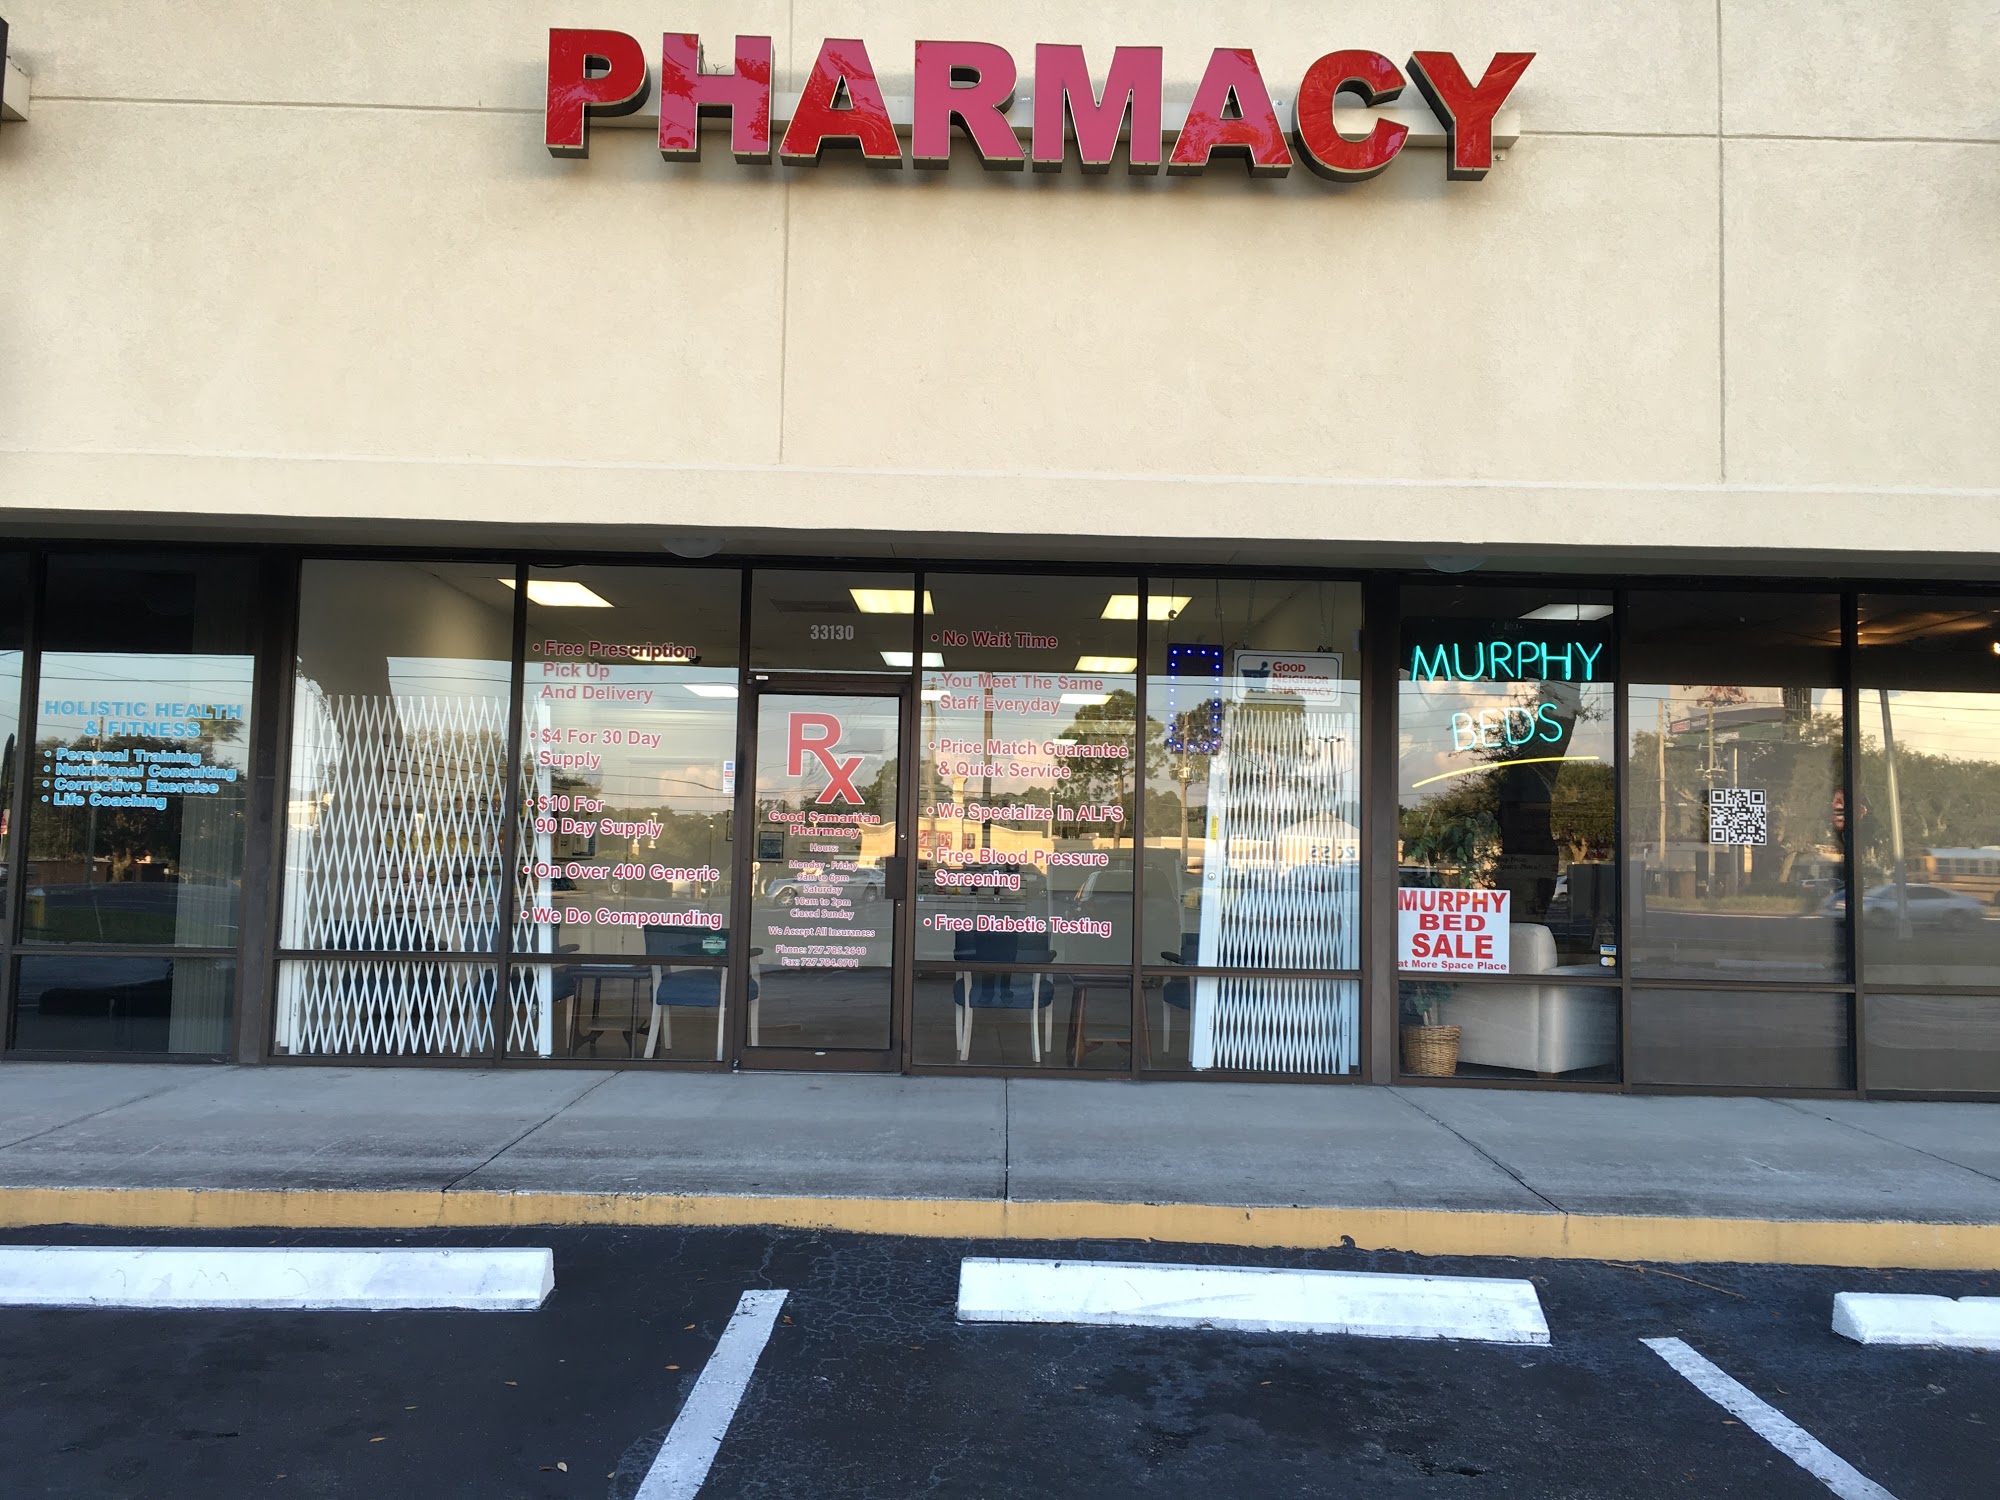 Good Samaritan Pharmacy